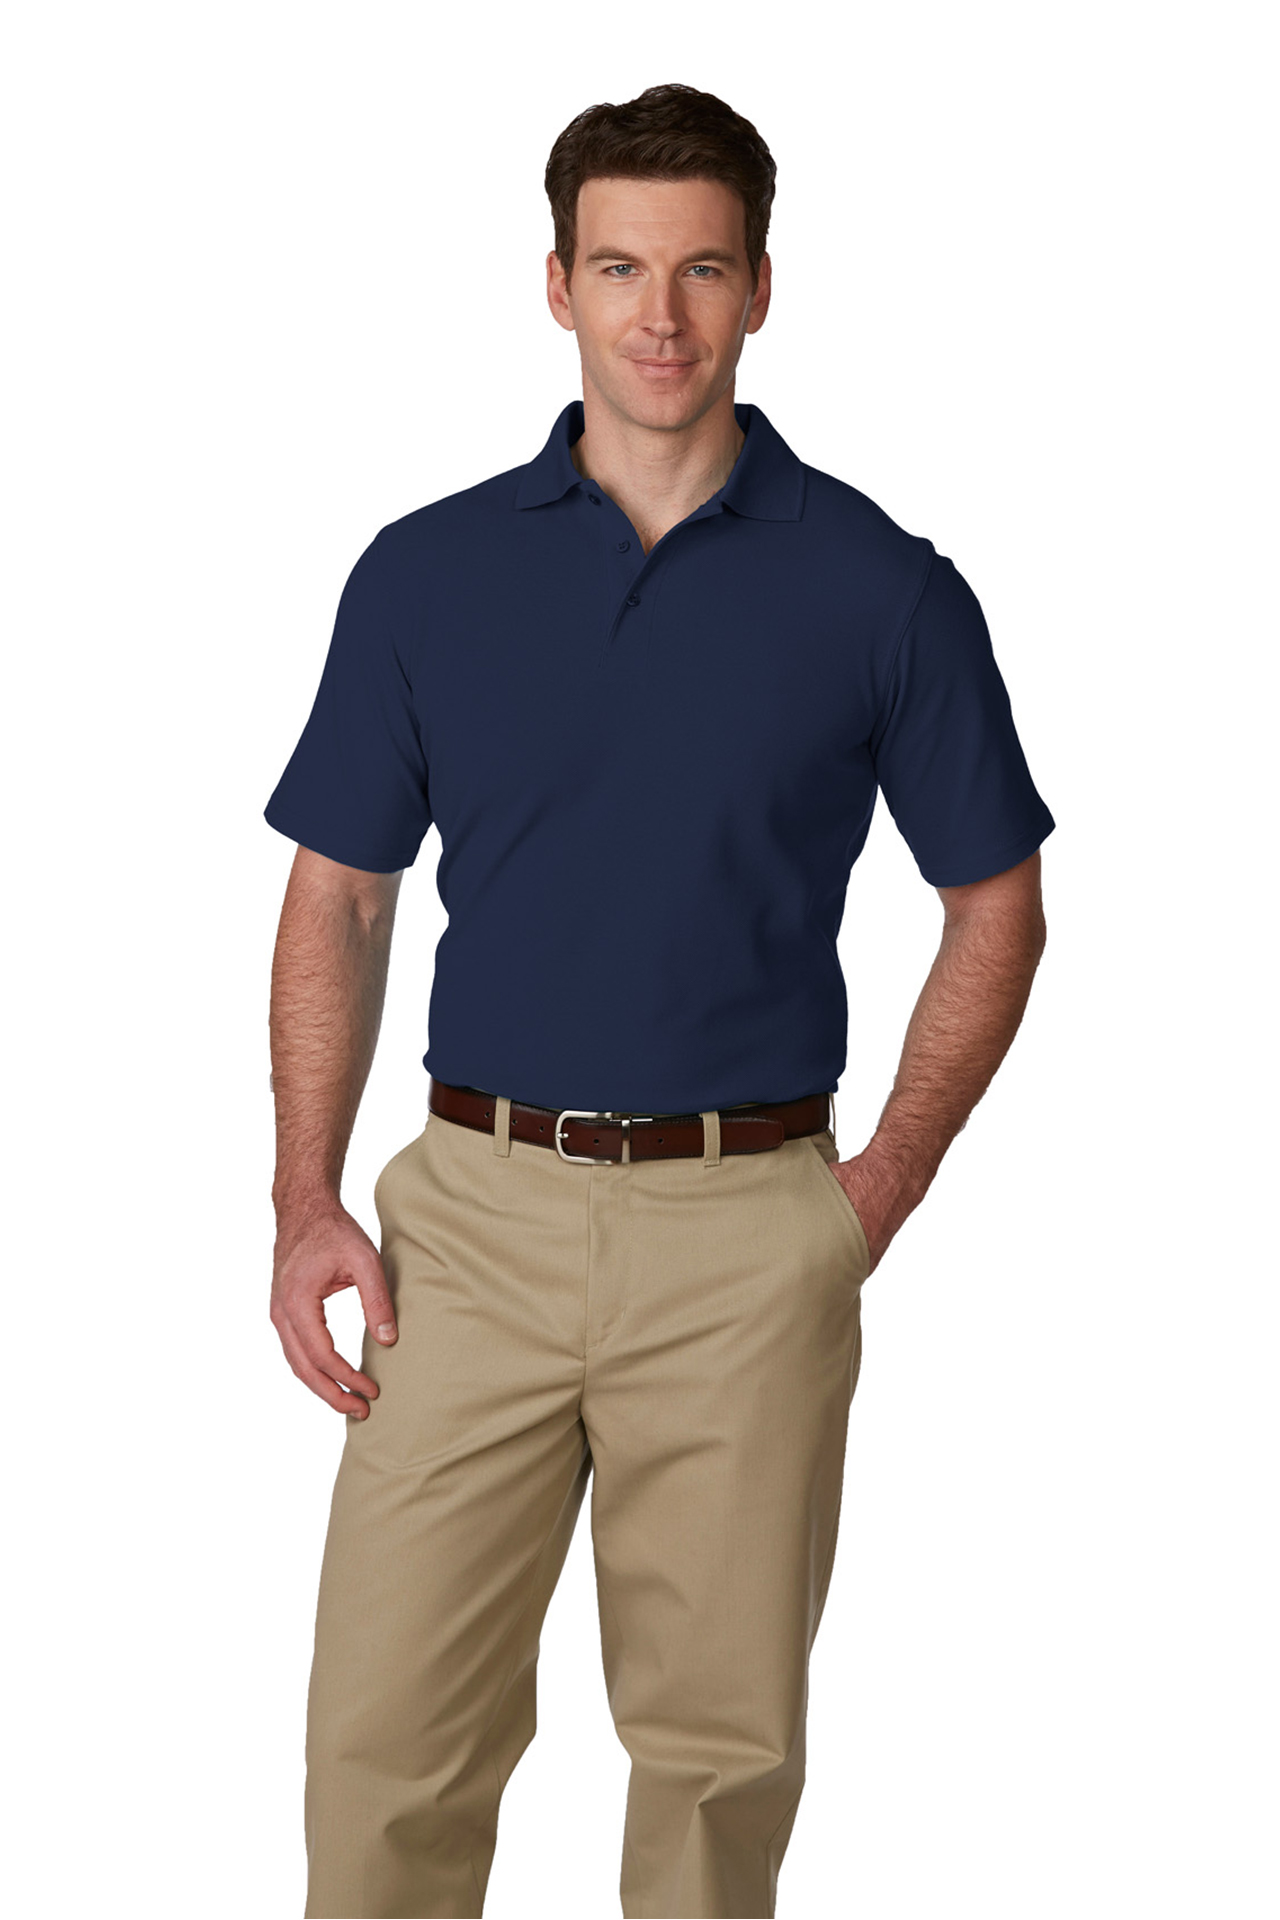 polo shirt and khaki pants